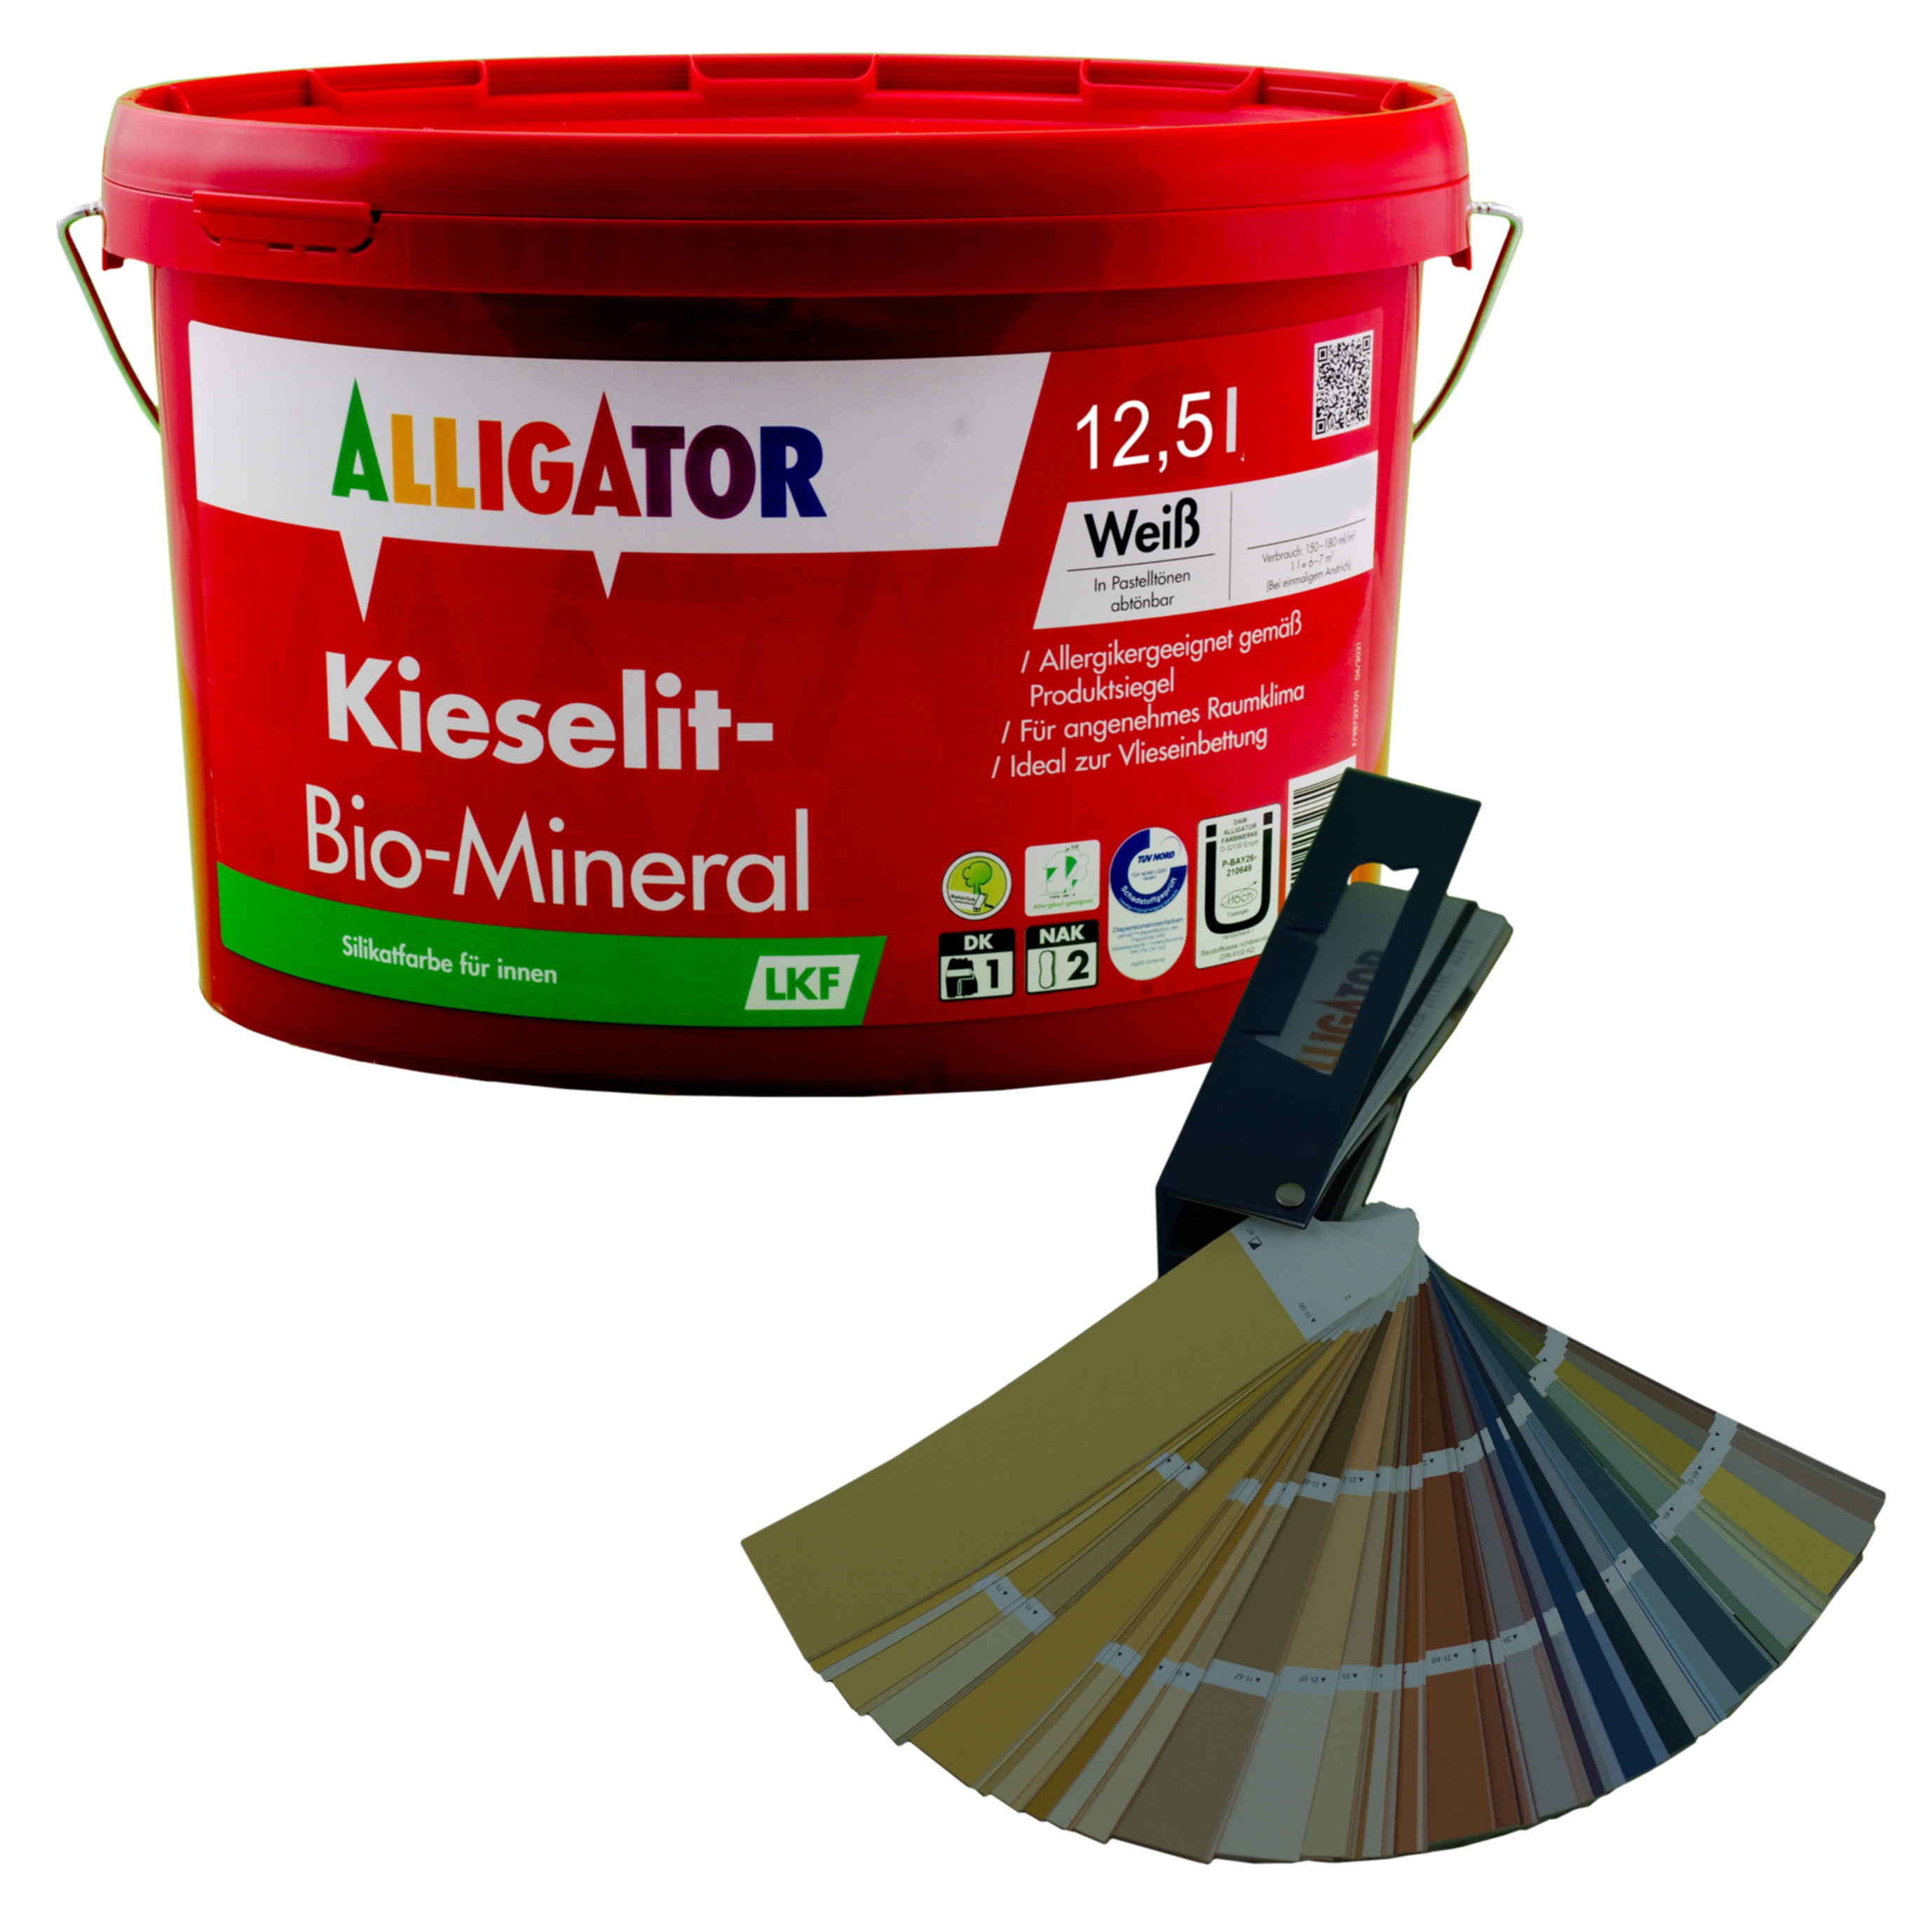 Alligator Kieselit-Bio-Mineral LKF 12,5 ltr. mix PG4